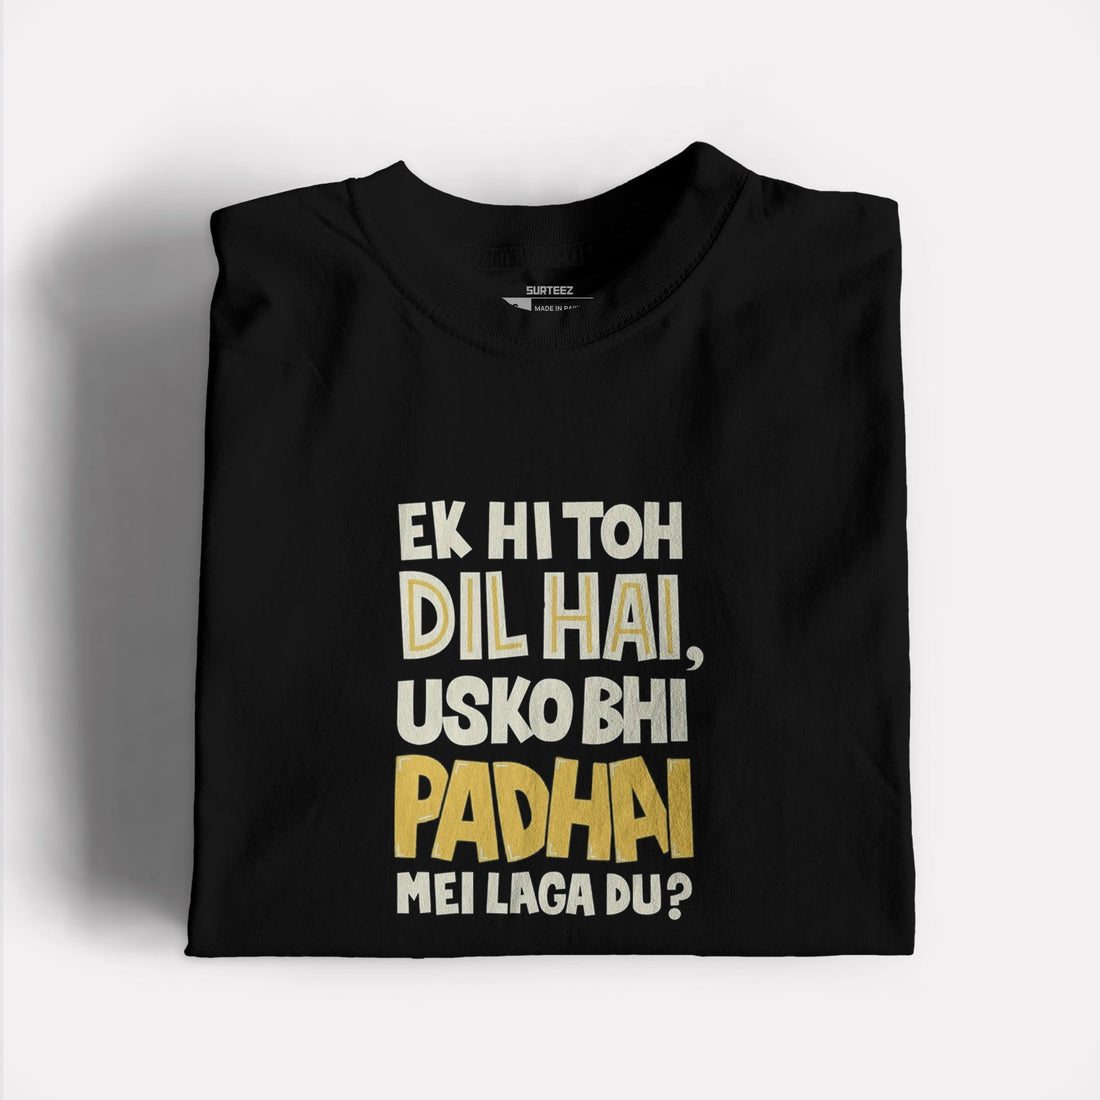 Padhai Graphic Tshirt